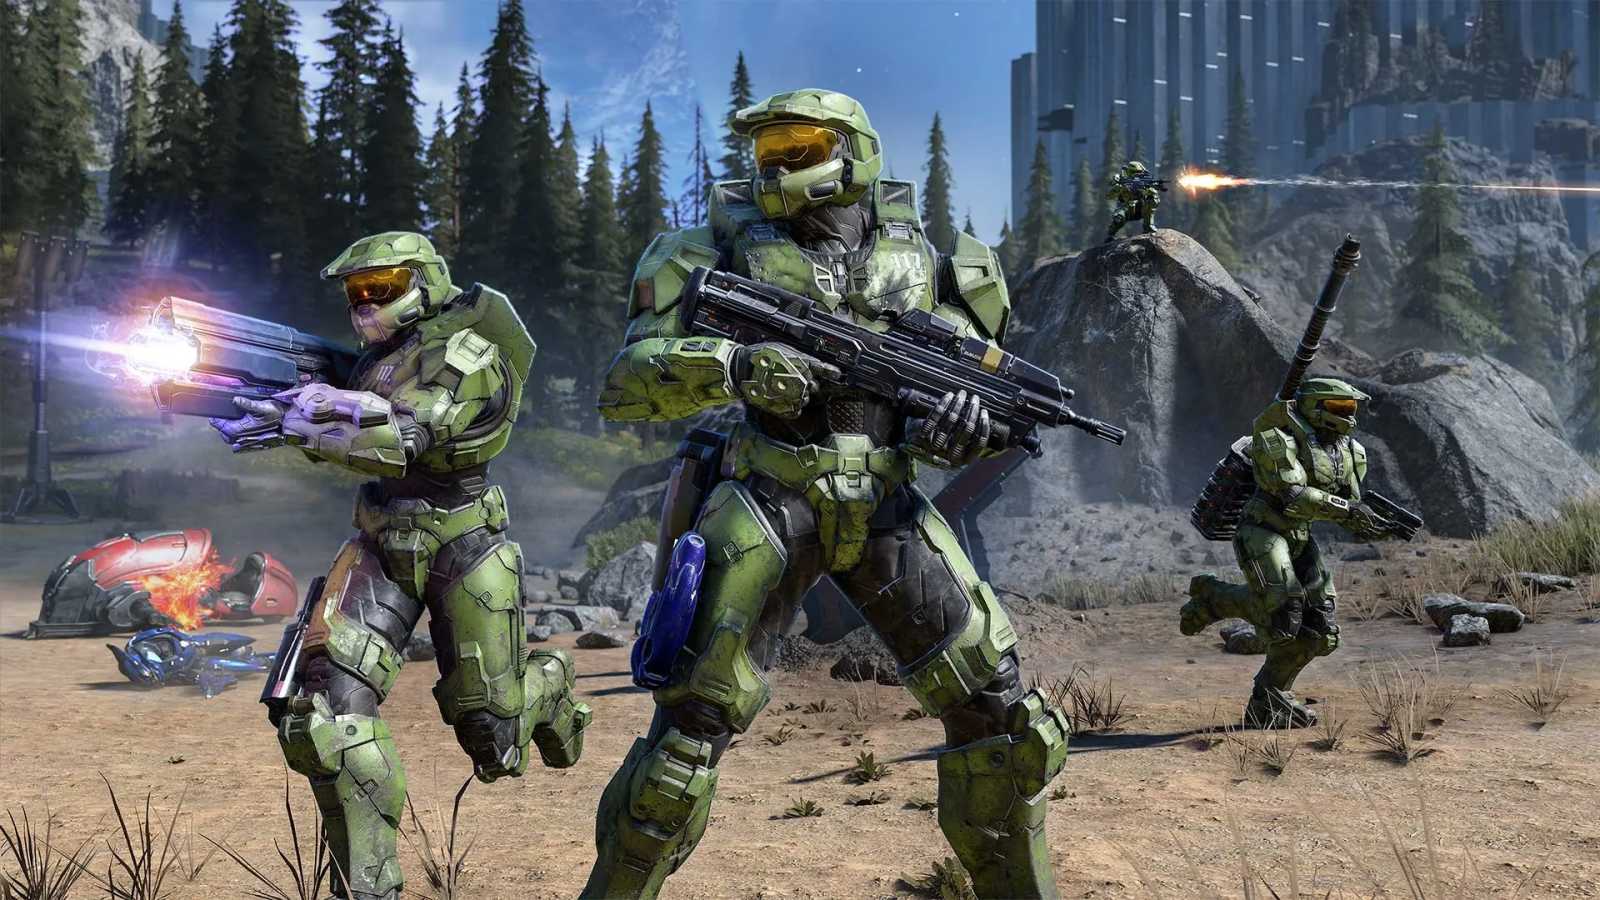 Propouštění v 343 Industries nebude mít vliv na sérii Halo. Další zdroje potvrzují vývoj nového dílu